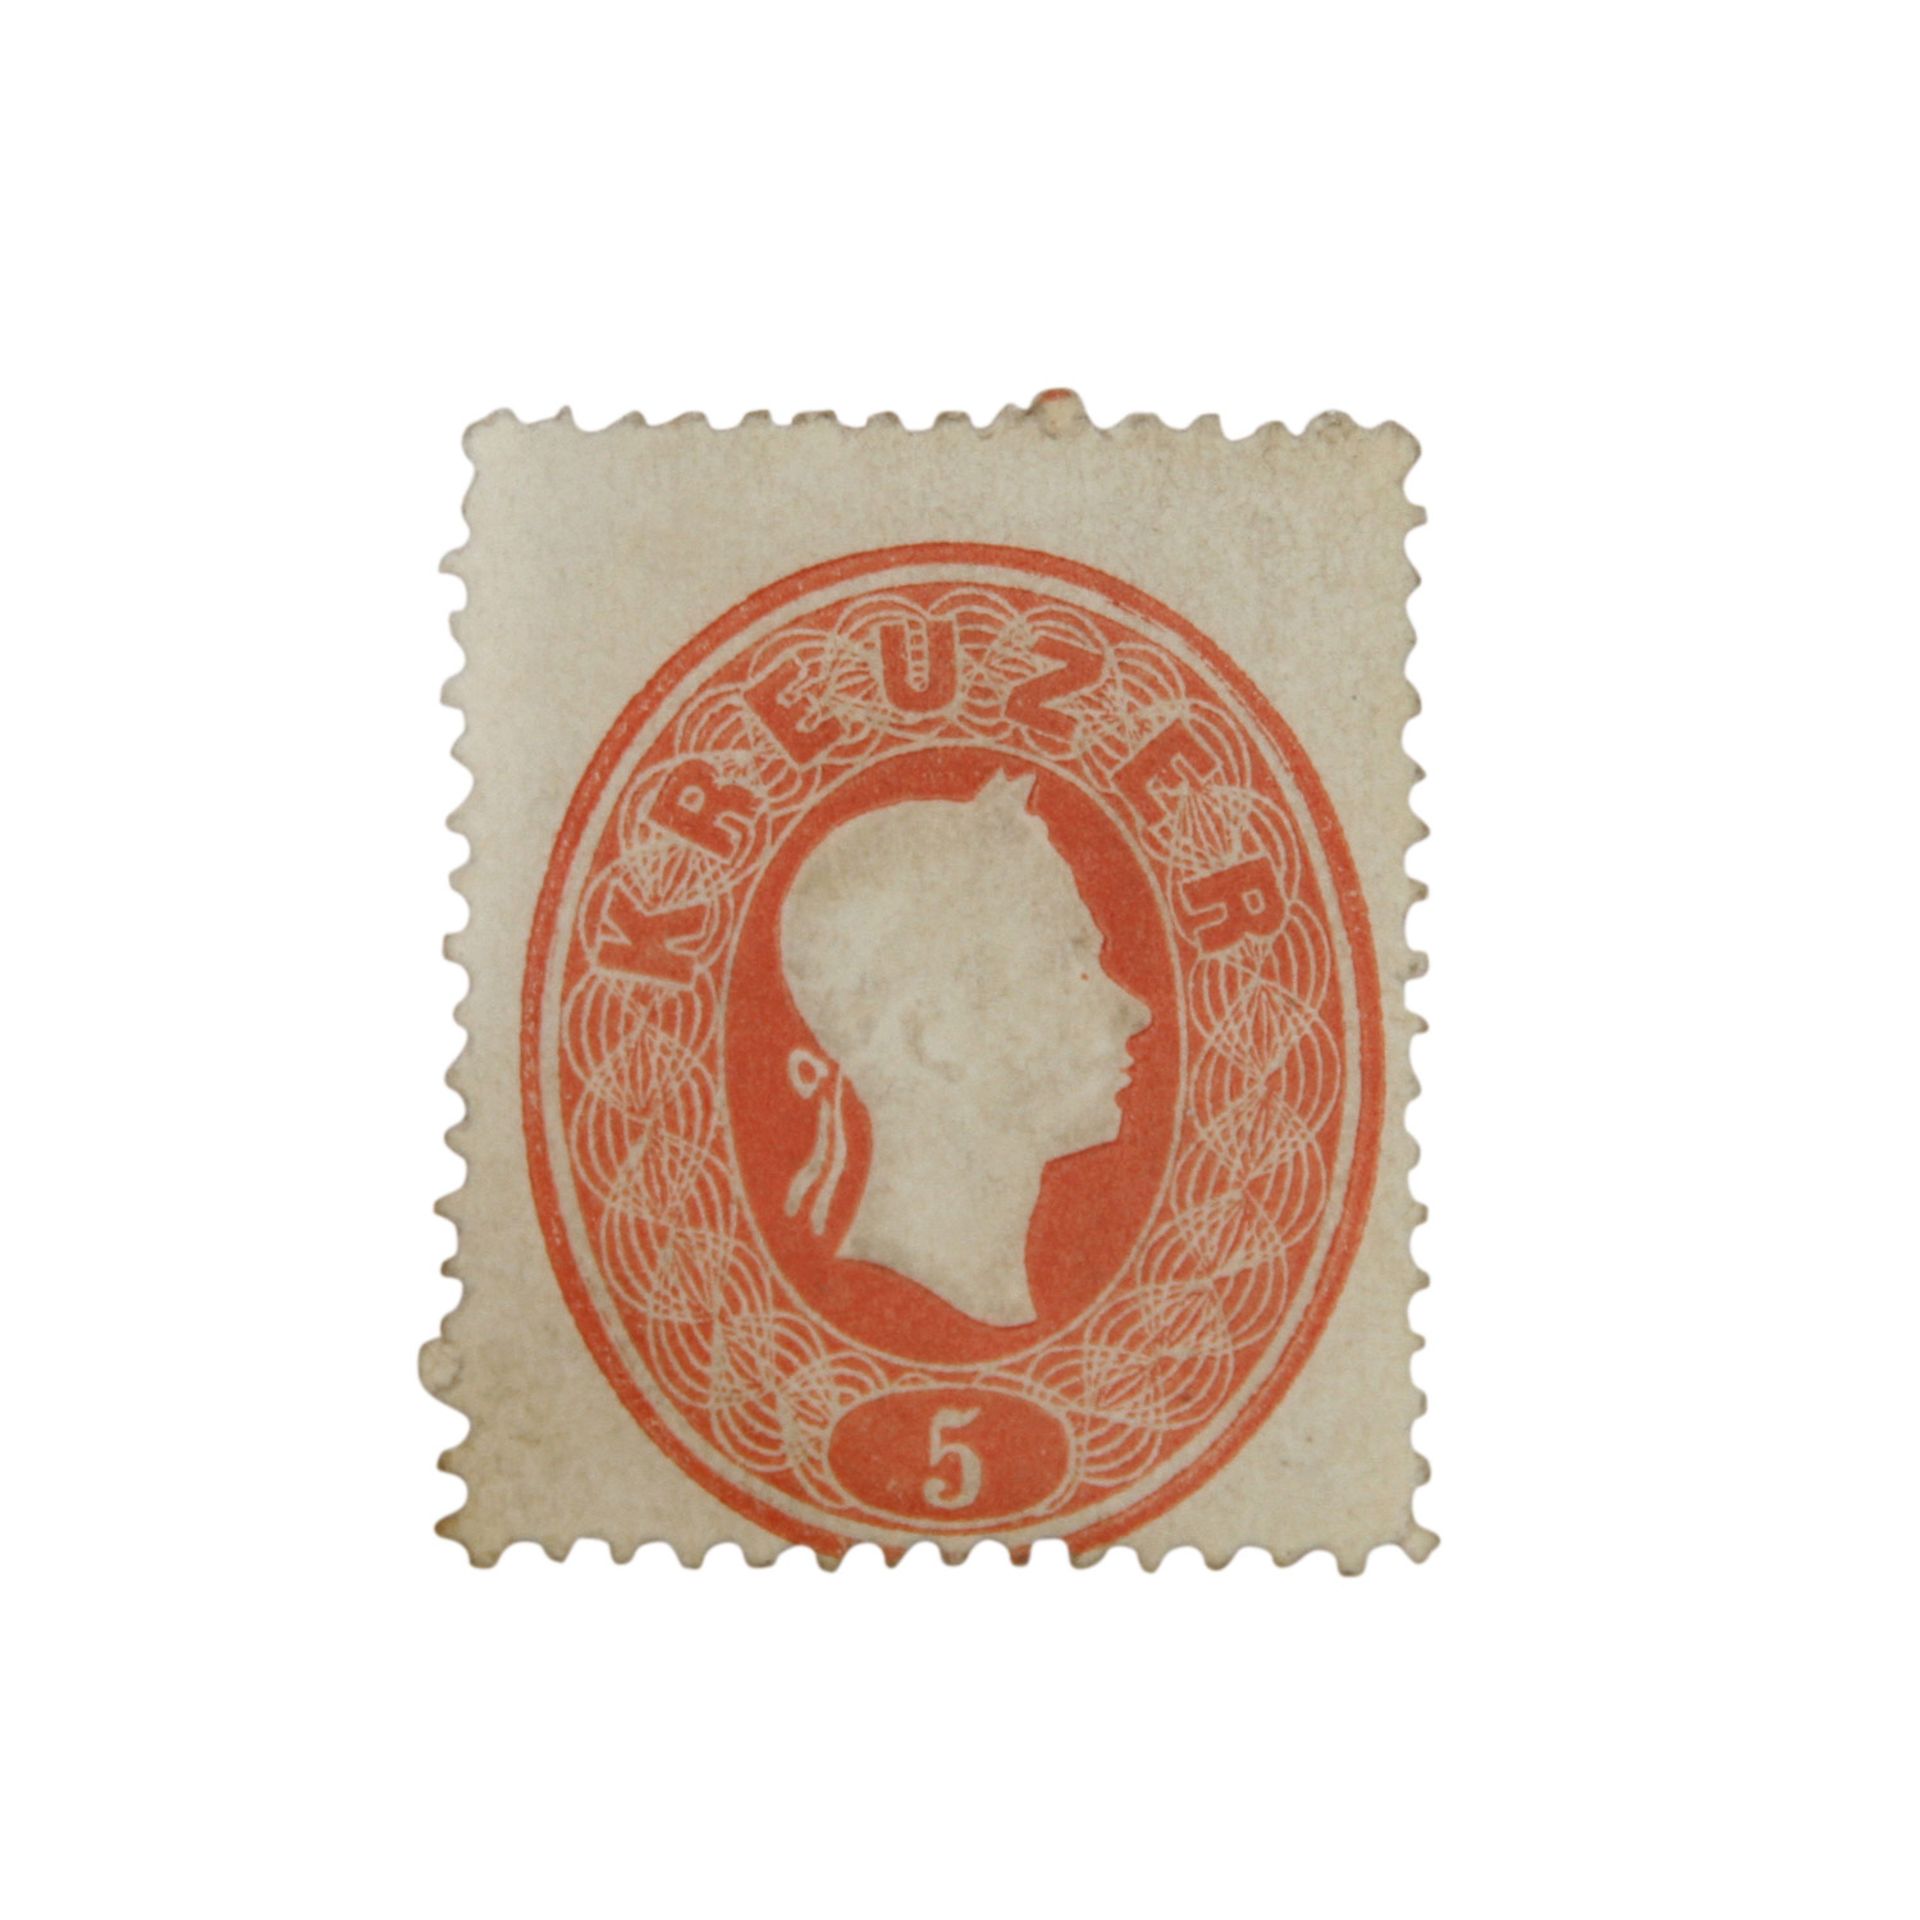 Österreich 1860 – Freimarkenausgabe Mi.Nr. 20a,rot, echt, ungebraucht, Restgummi. Neuer Kurzbefund - Bild 2 aus 3